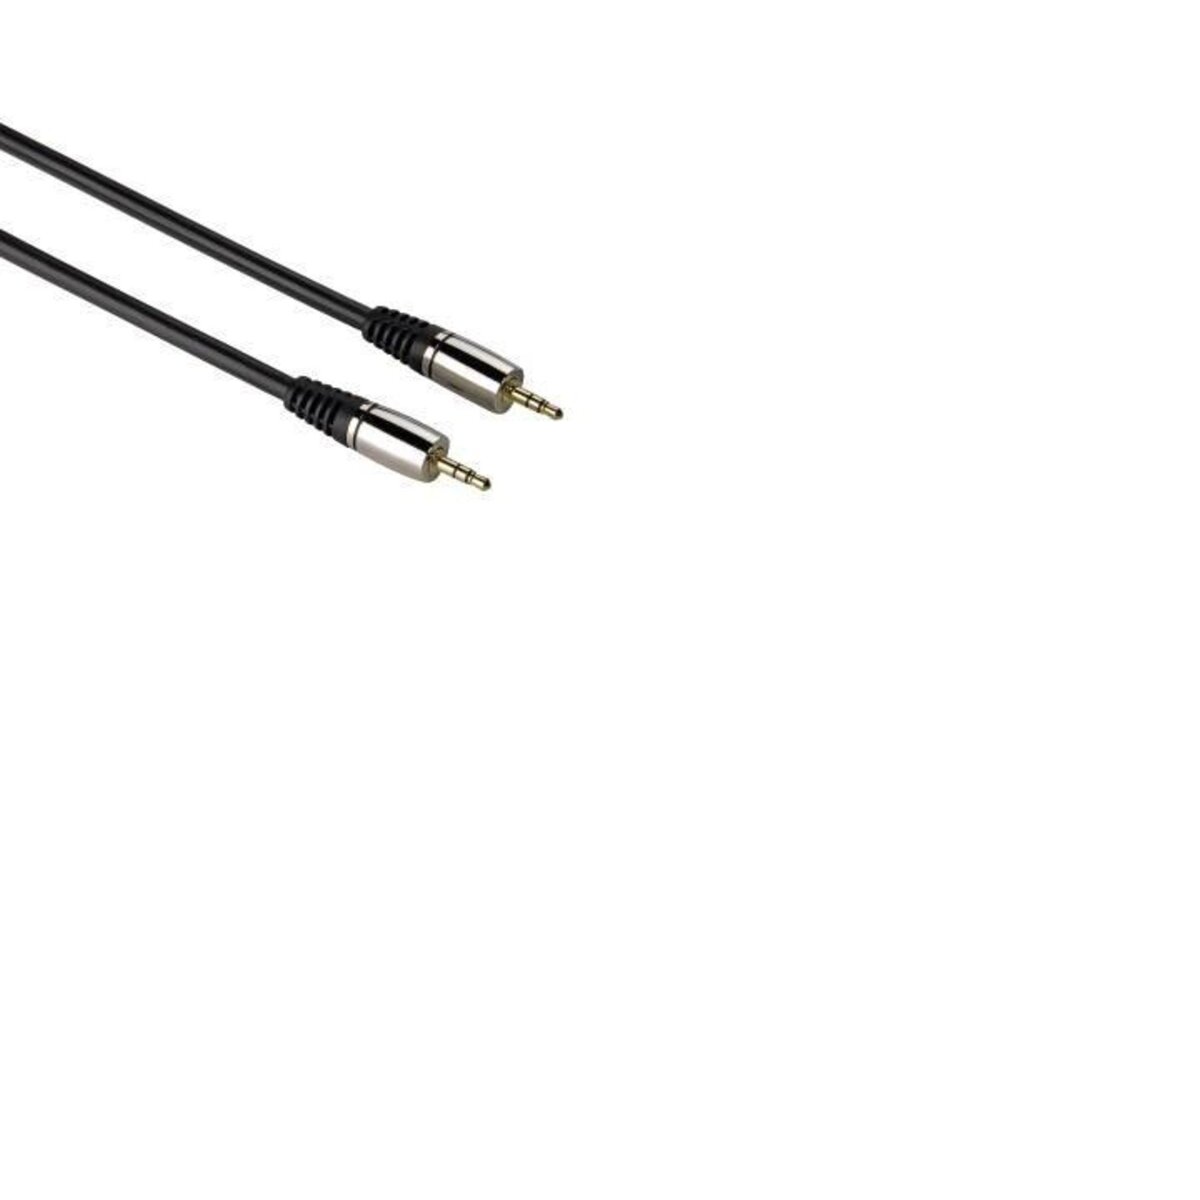 THOMSON Connectique Audio Câble Jack 3.5mm